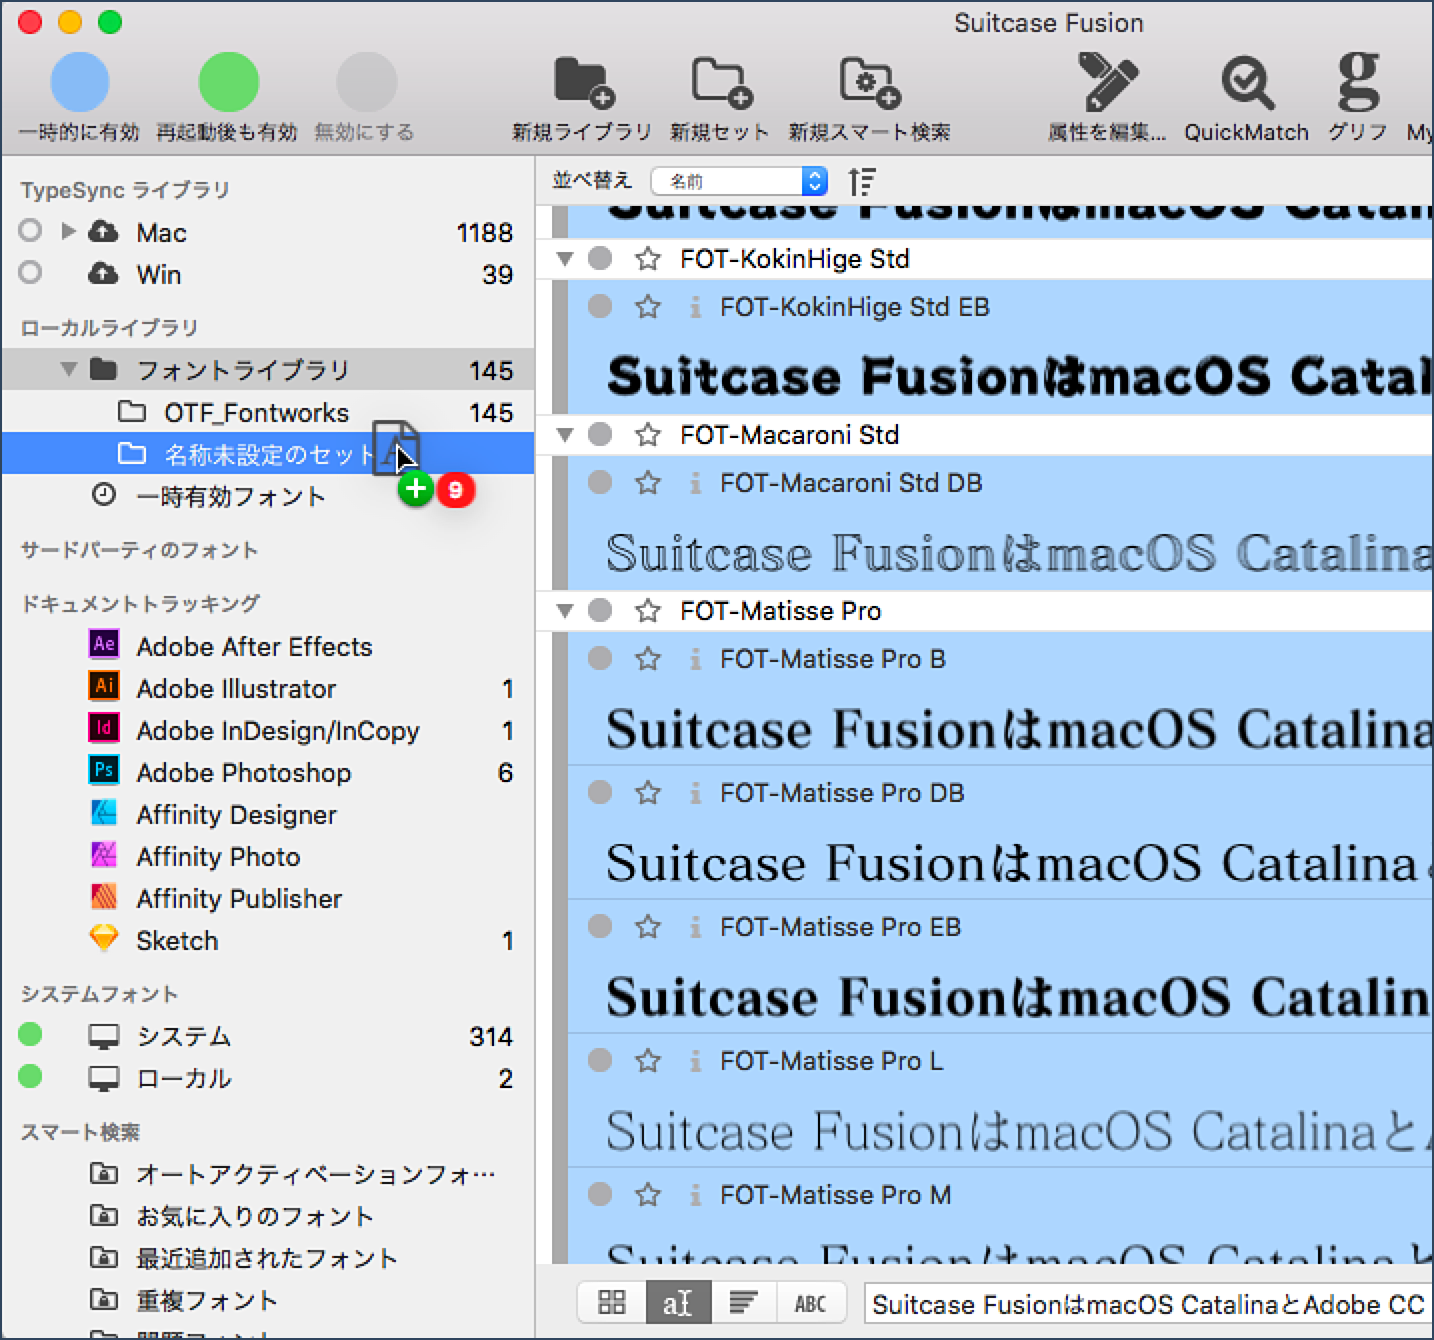 extensis suitcase fusion 5 font cache windows